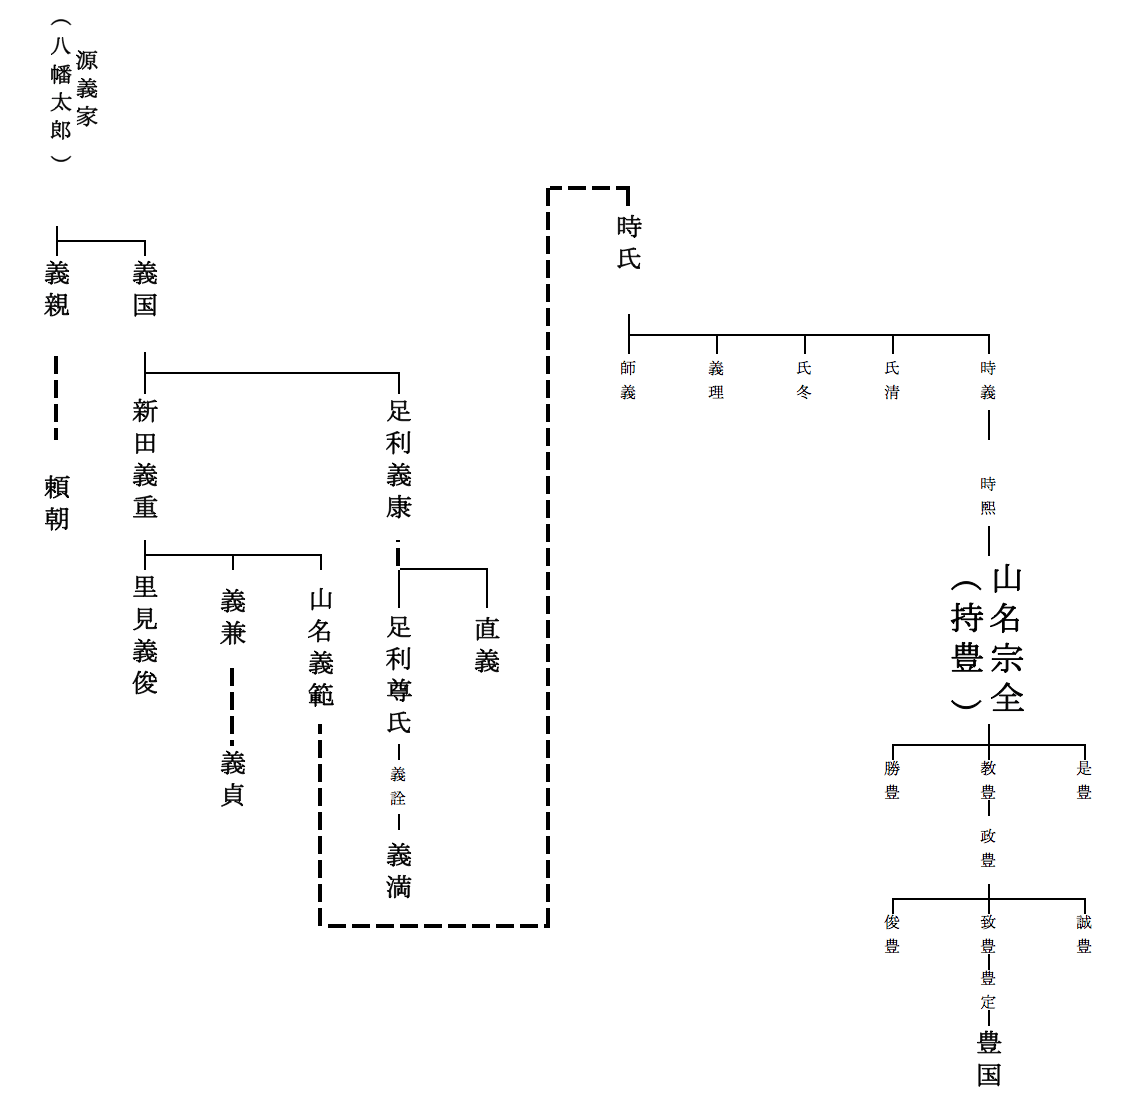 山名宗全の家系図